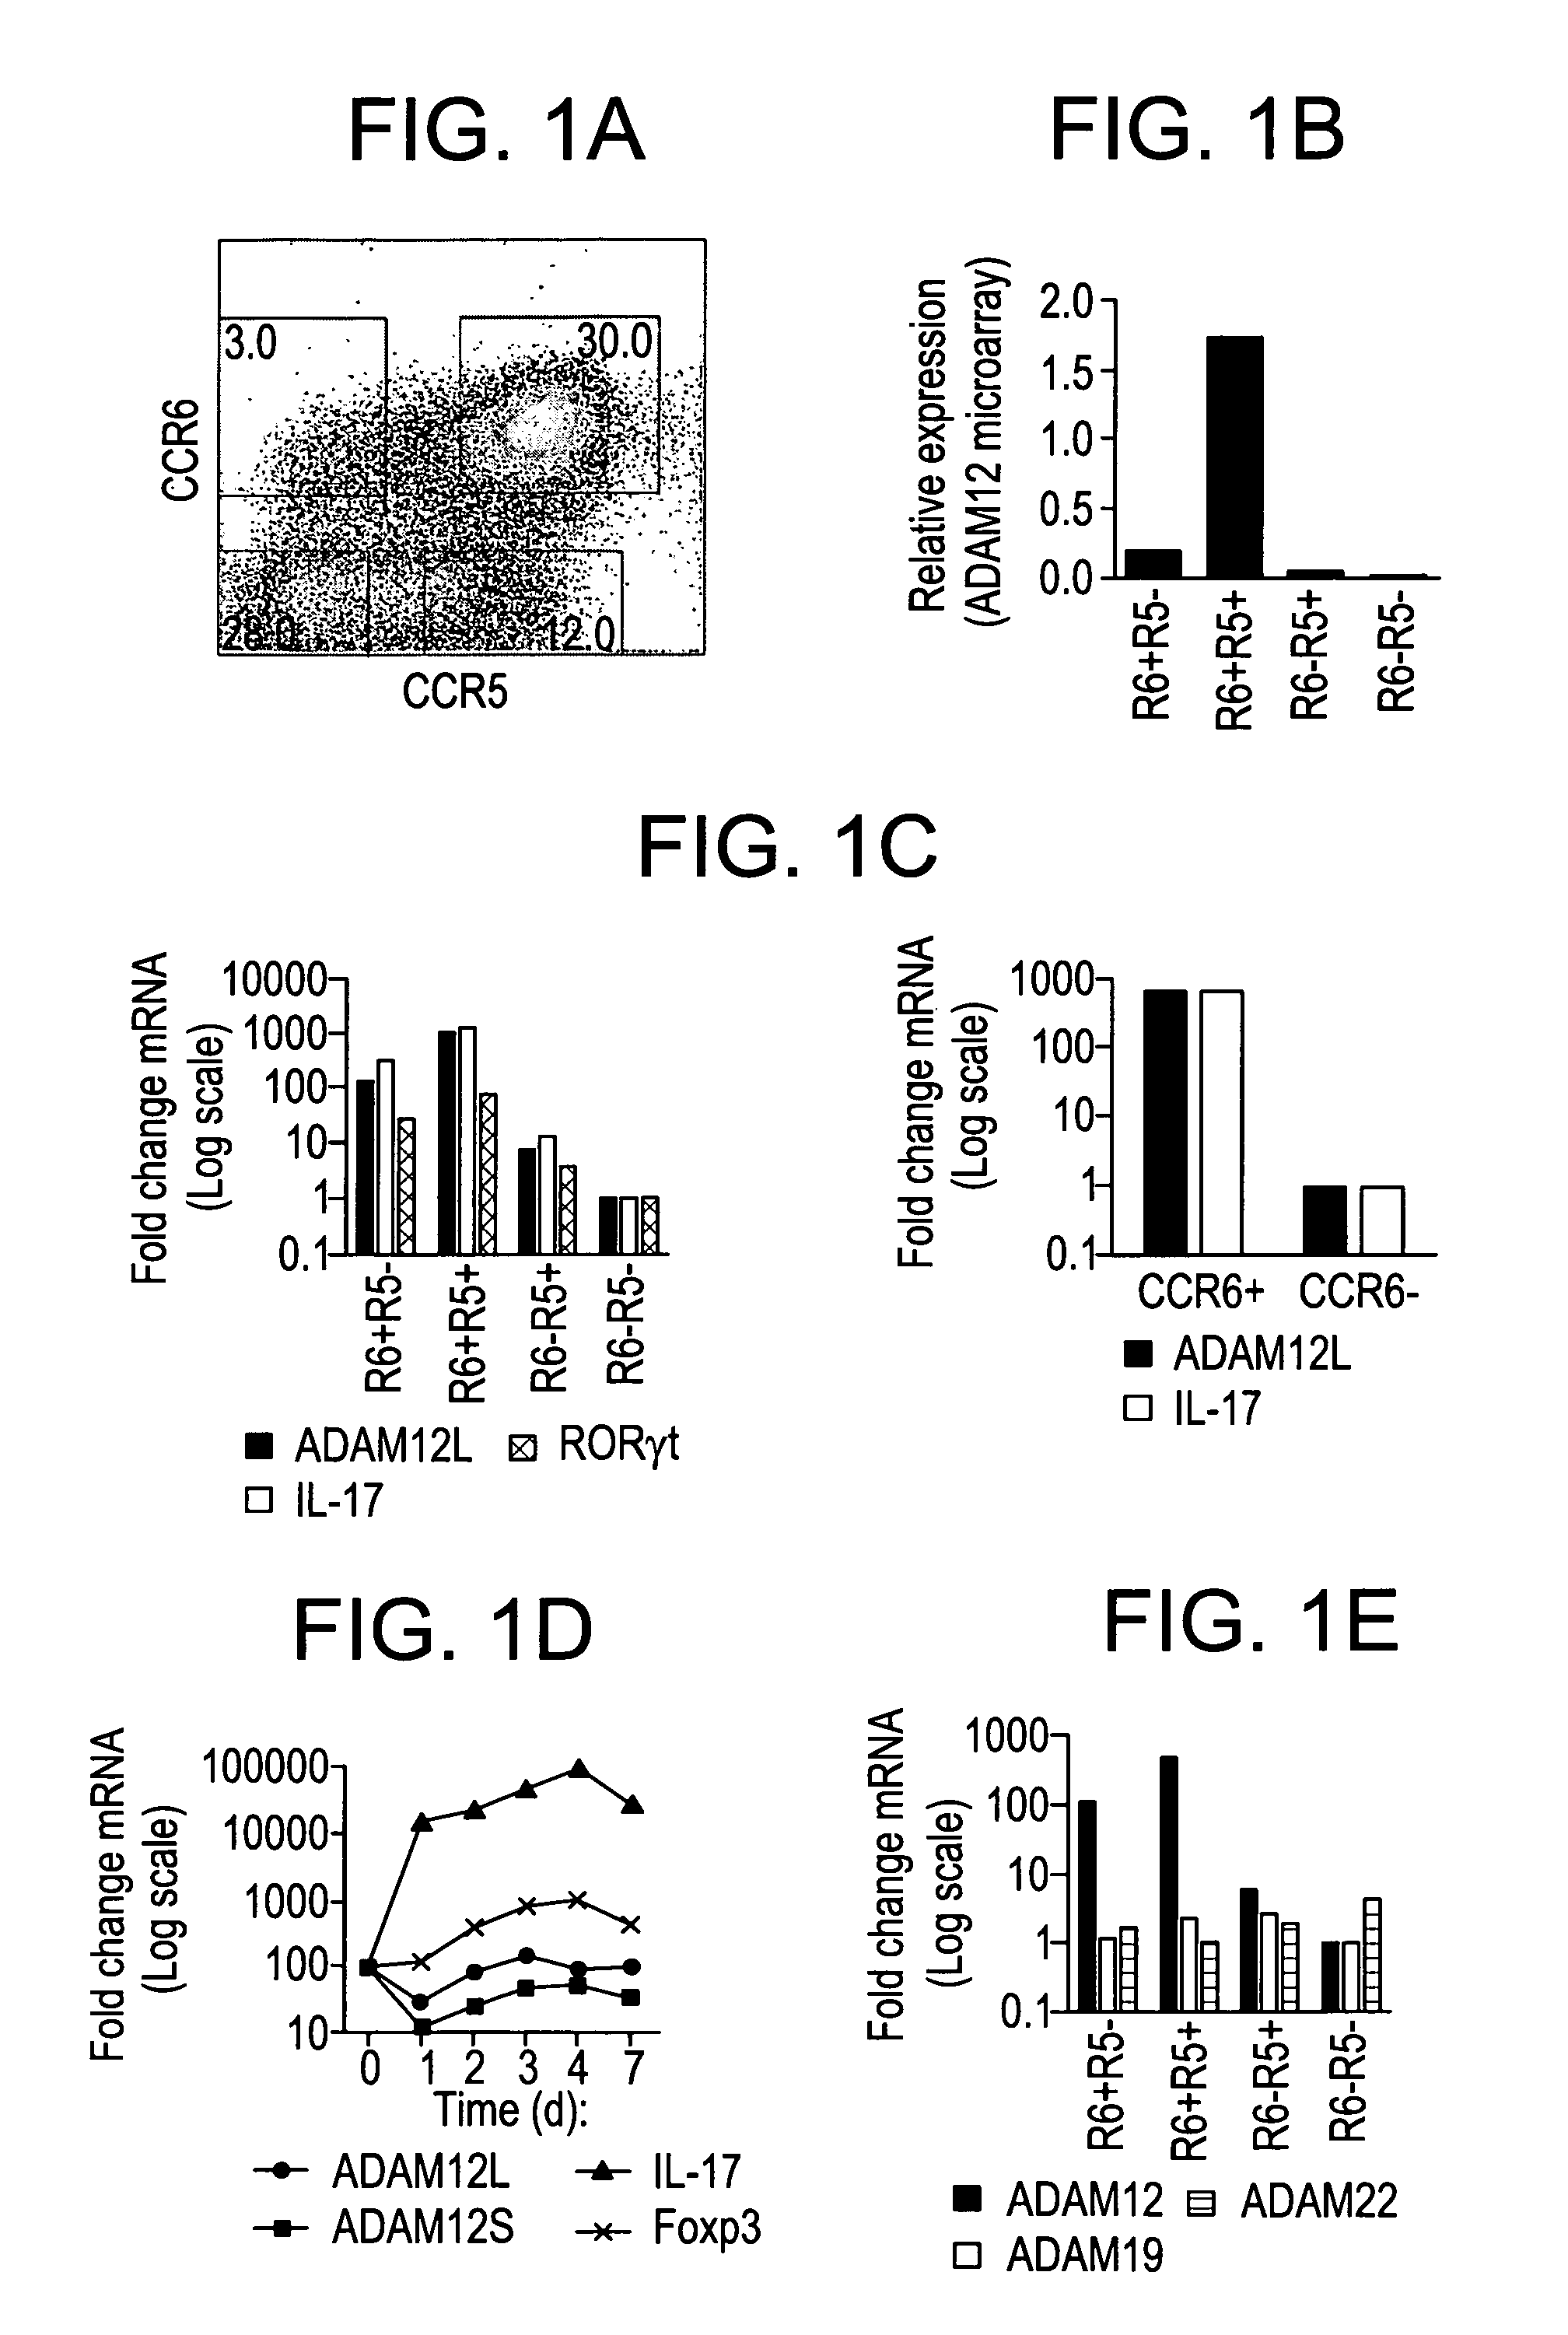 Methods of modulating TGFβ signaling